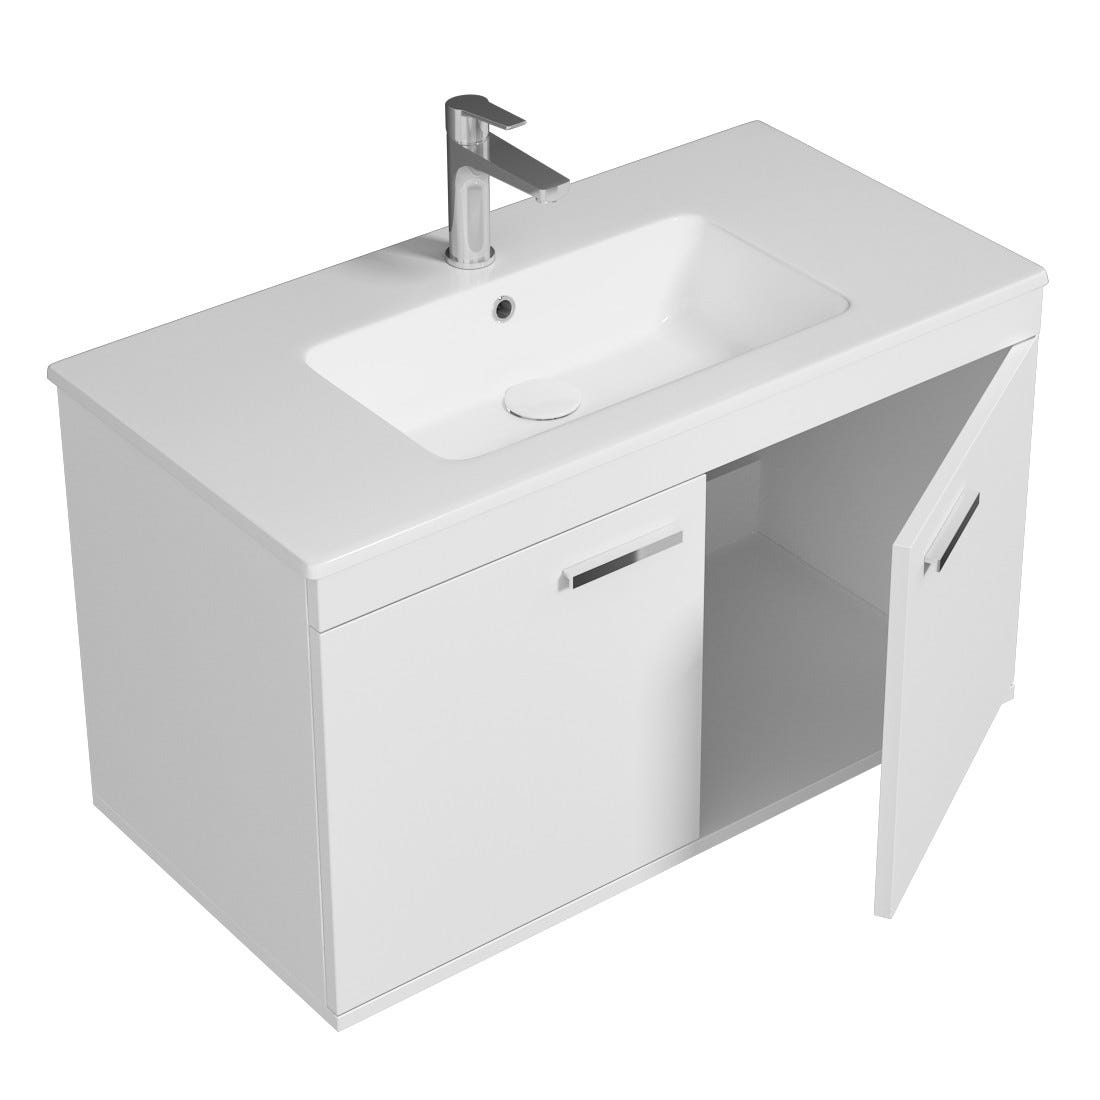 RUBITE Meuble salle de bain simple vasque 2 portes blanc largeur 90 cm 1